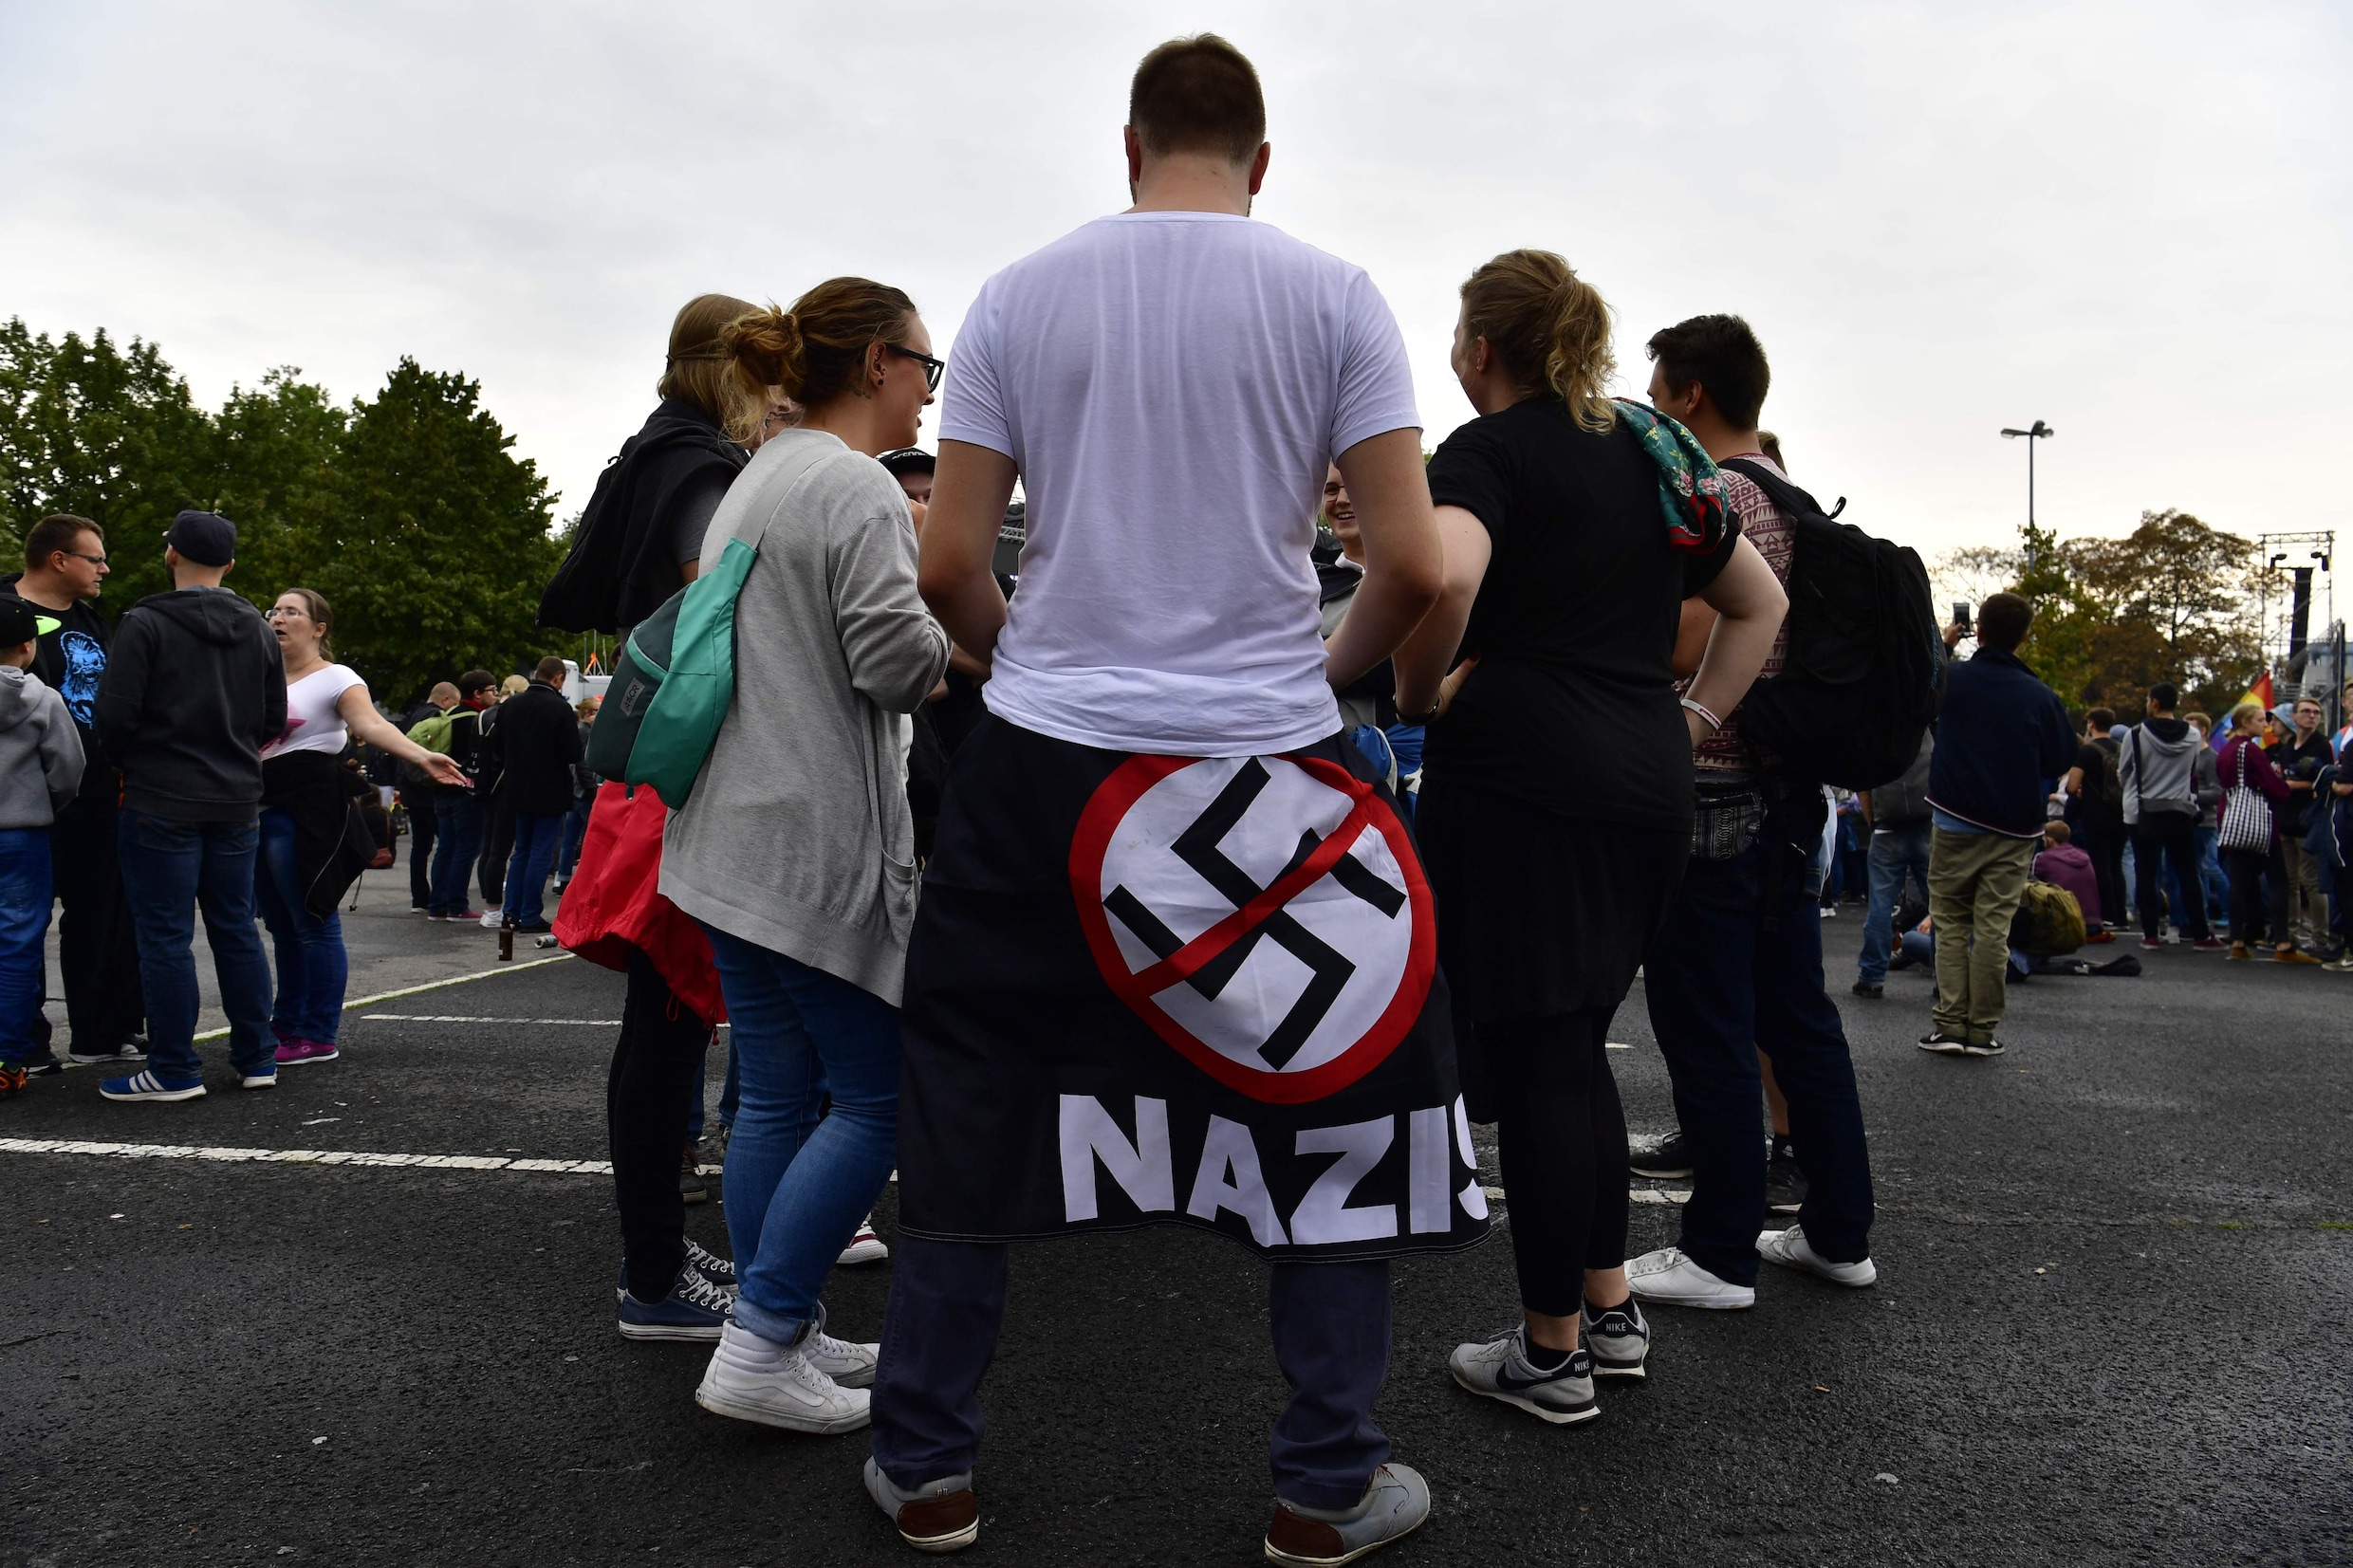 Duitse stad verbiedt tegenbetoging van extreemrechts tijdens openluchtconcert tegen racisme